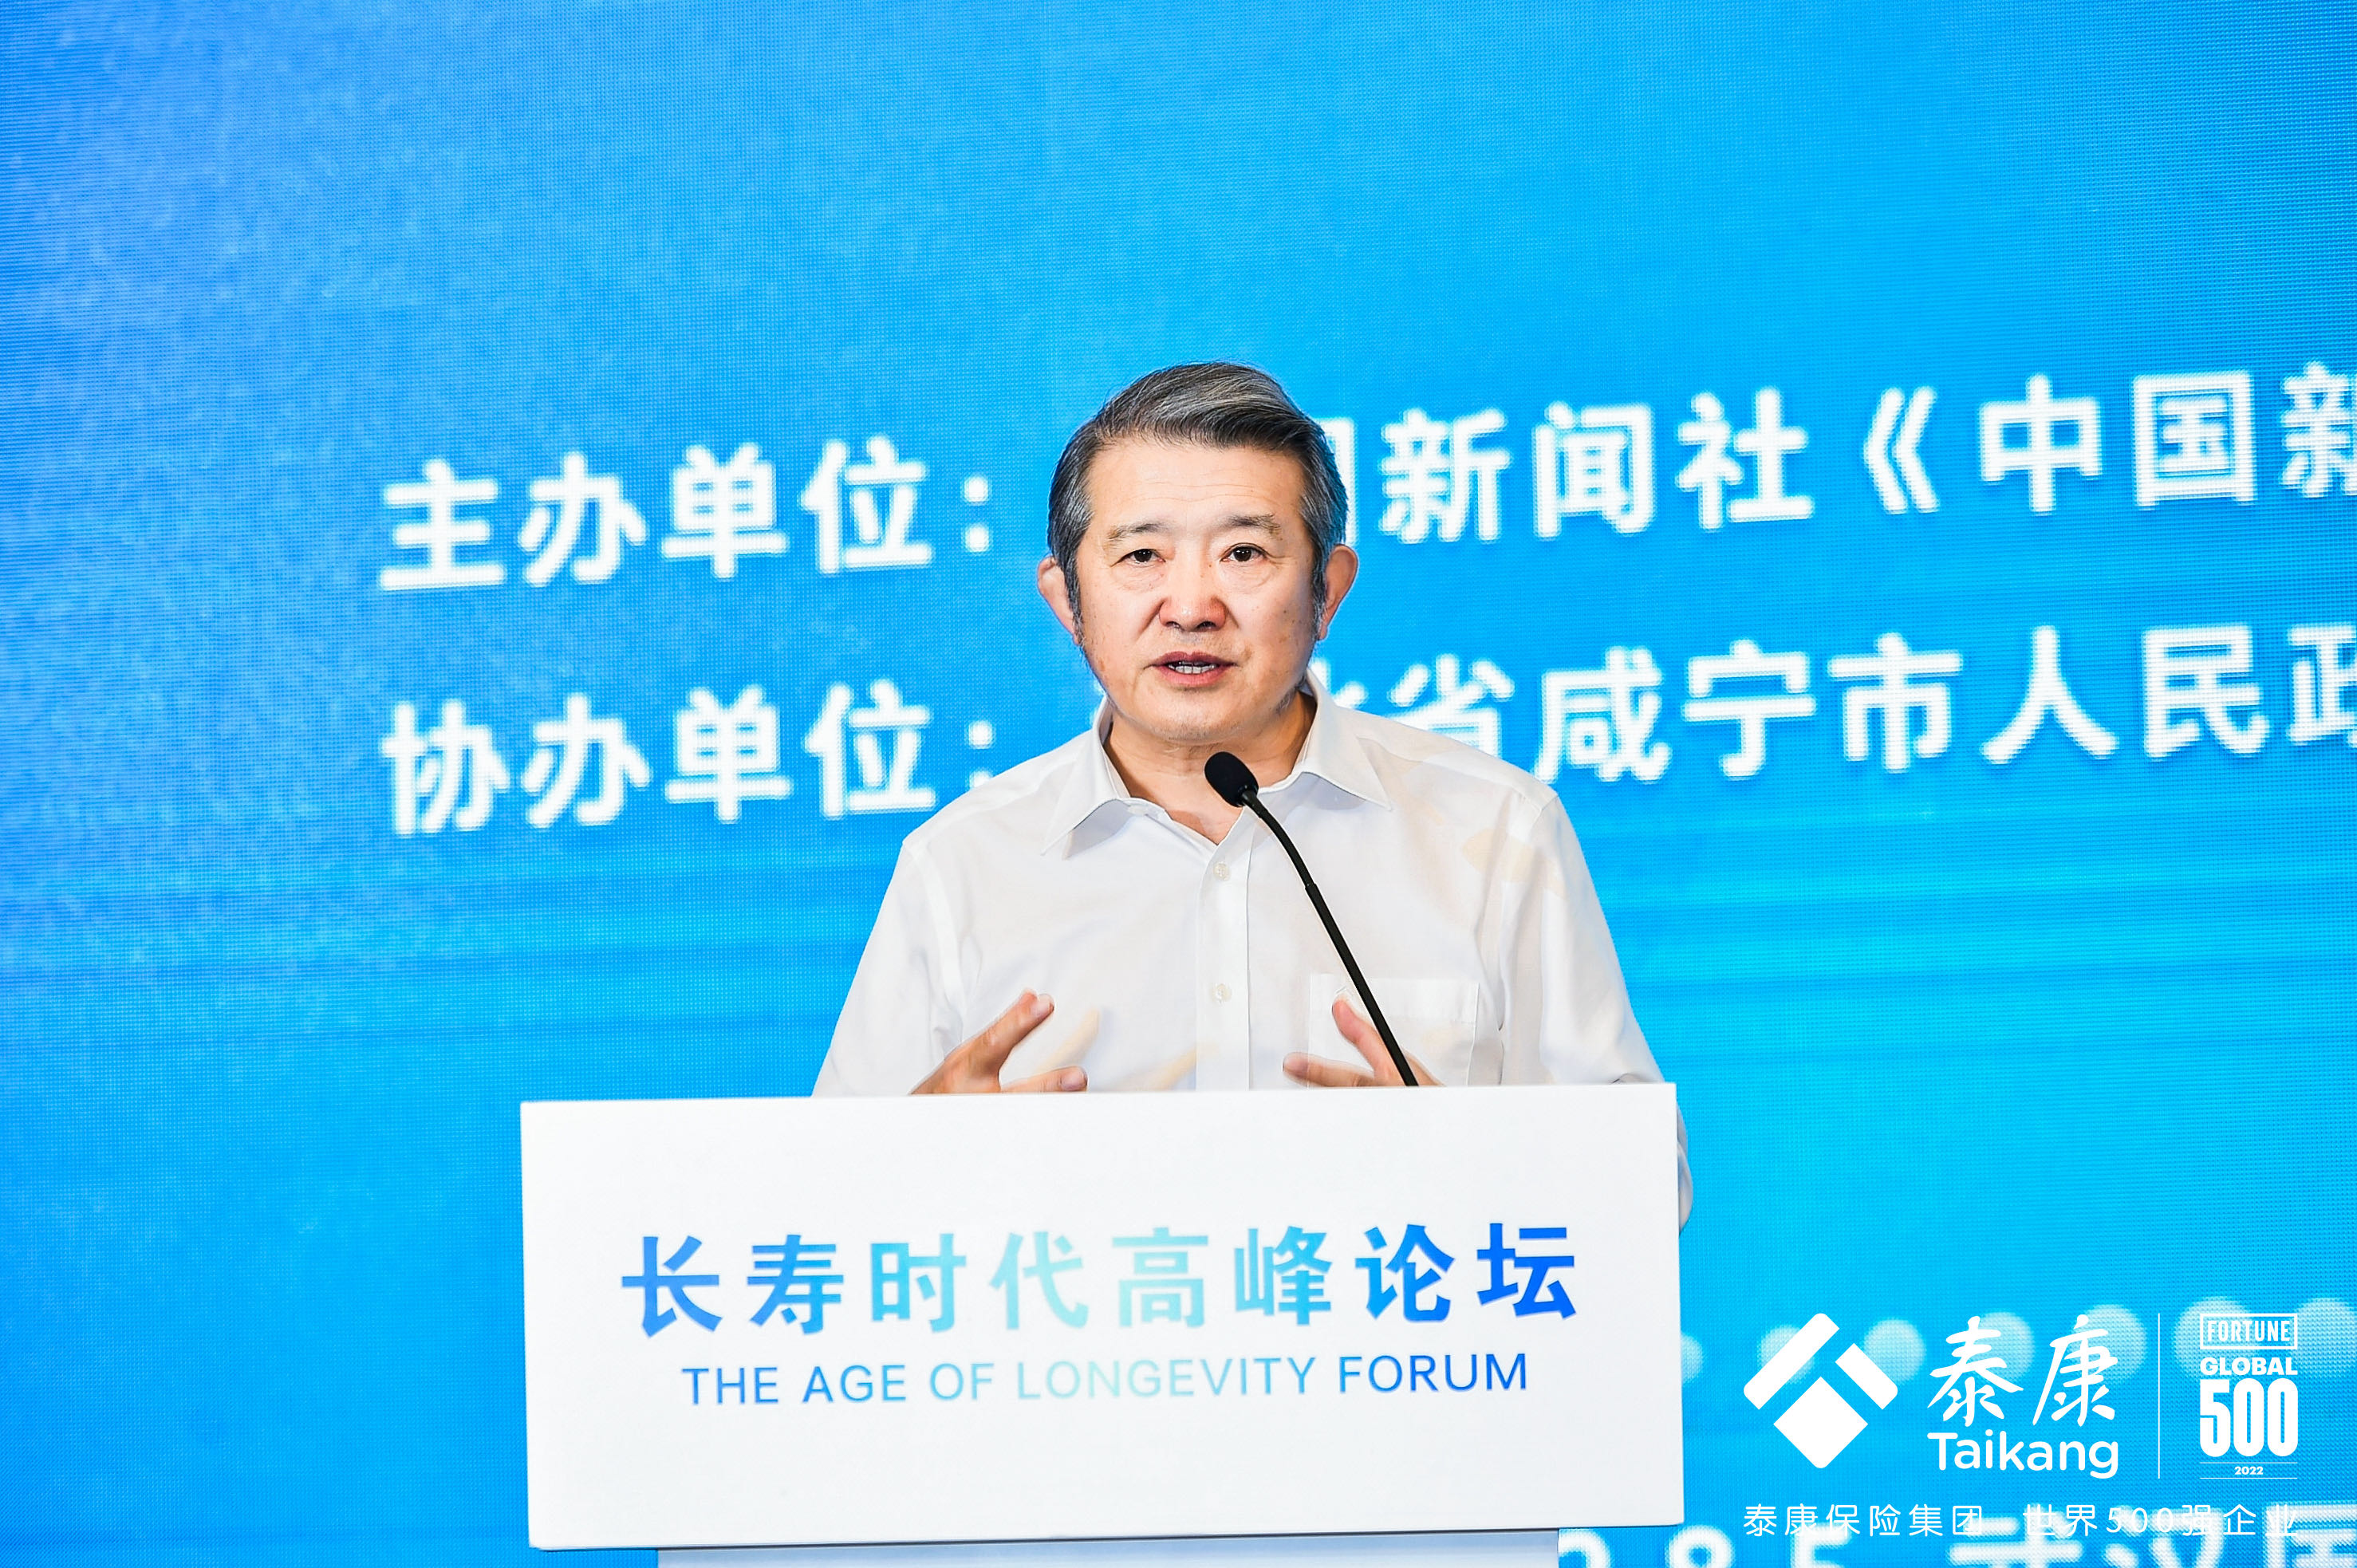 泰康保险集团创始人、董事长兼首席执行官陈东升在第四届世界大健康博览会长寿时代高峰论坛上